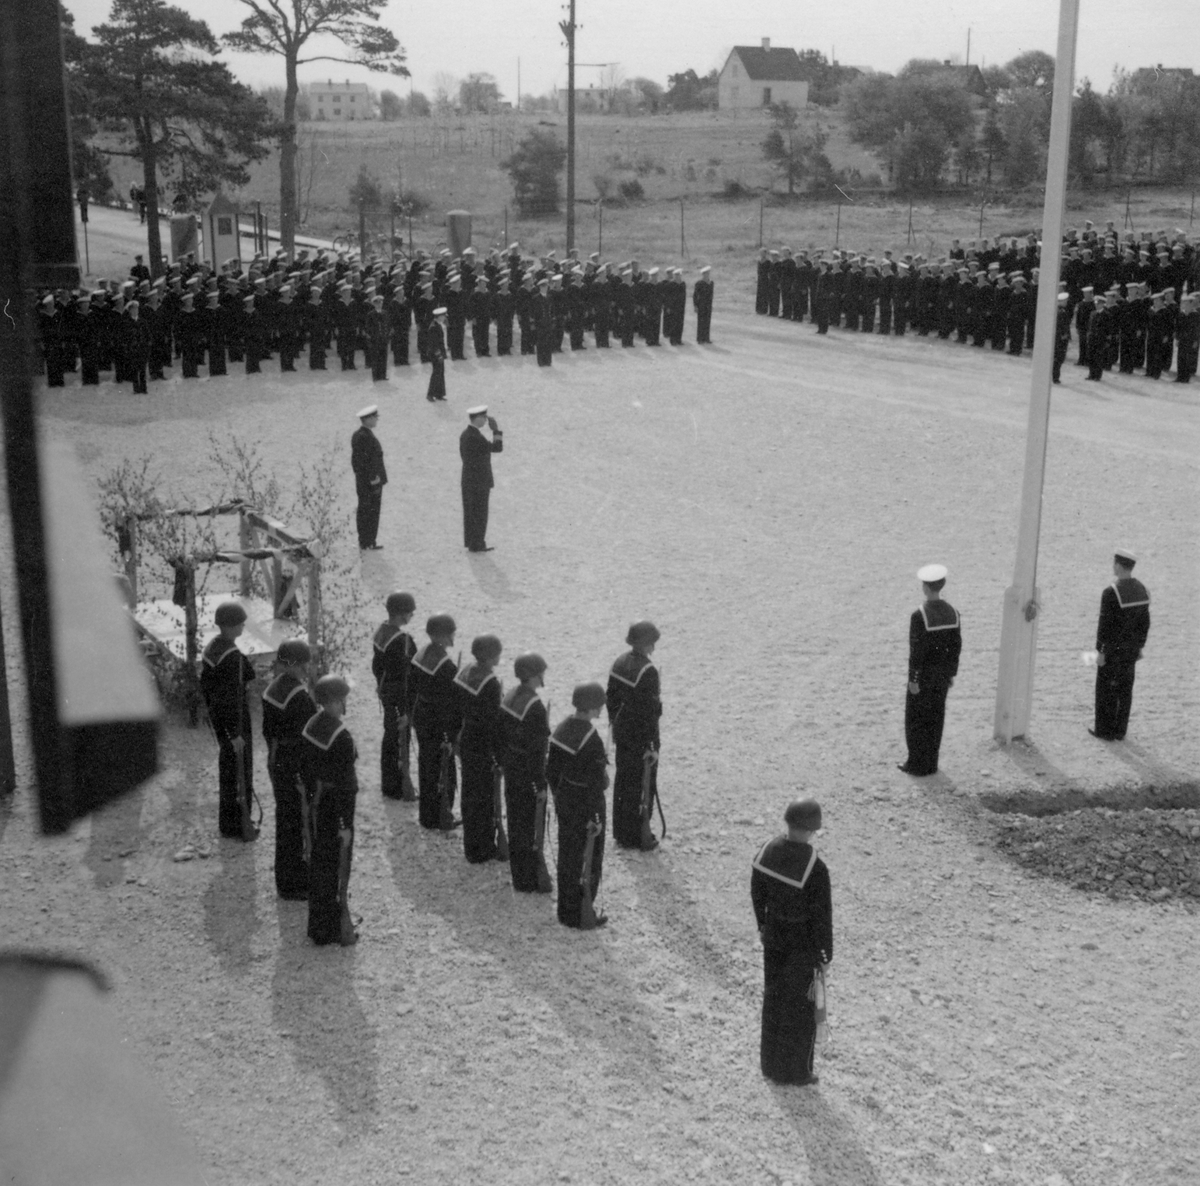 Svenska flaggans dag firas på Gotlands kustartilleriregemente, KA 3, vid Fårösund, 1938.
Uppställning av manskap, hälsning på befäl på regementsgården.